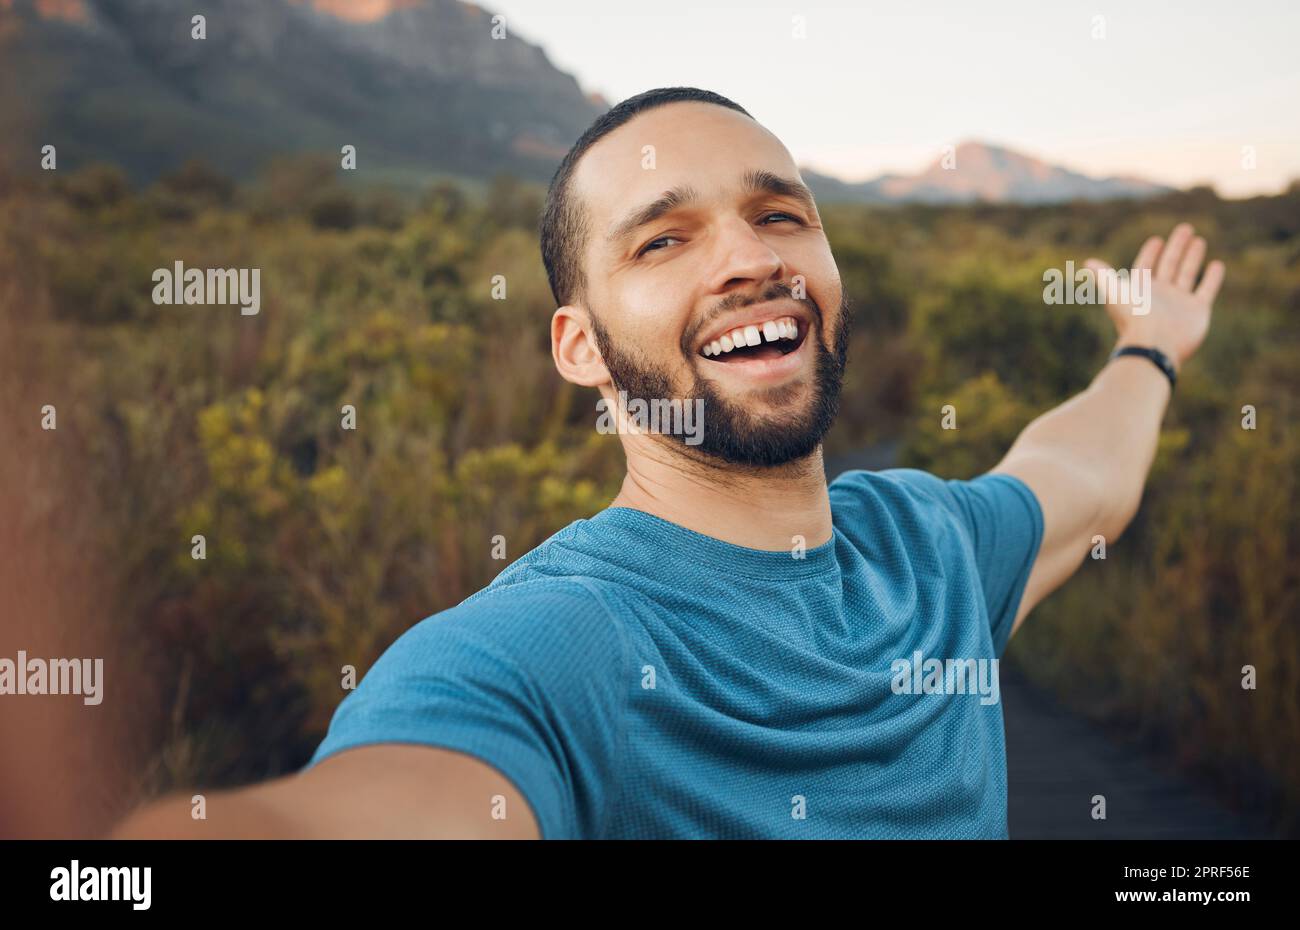 Felice, la natura e l'uomo che prende un selfie in campagna per una vacanza tranquilla avventura all'aperto in primavera con libertà. Sorriso, immagini e uomo enj Foto Stock